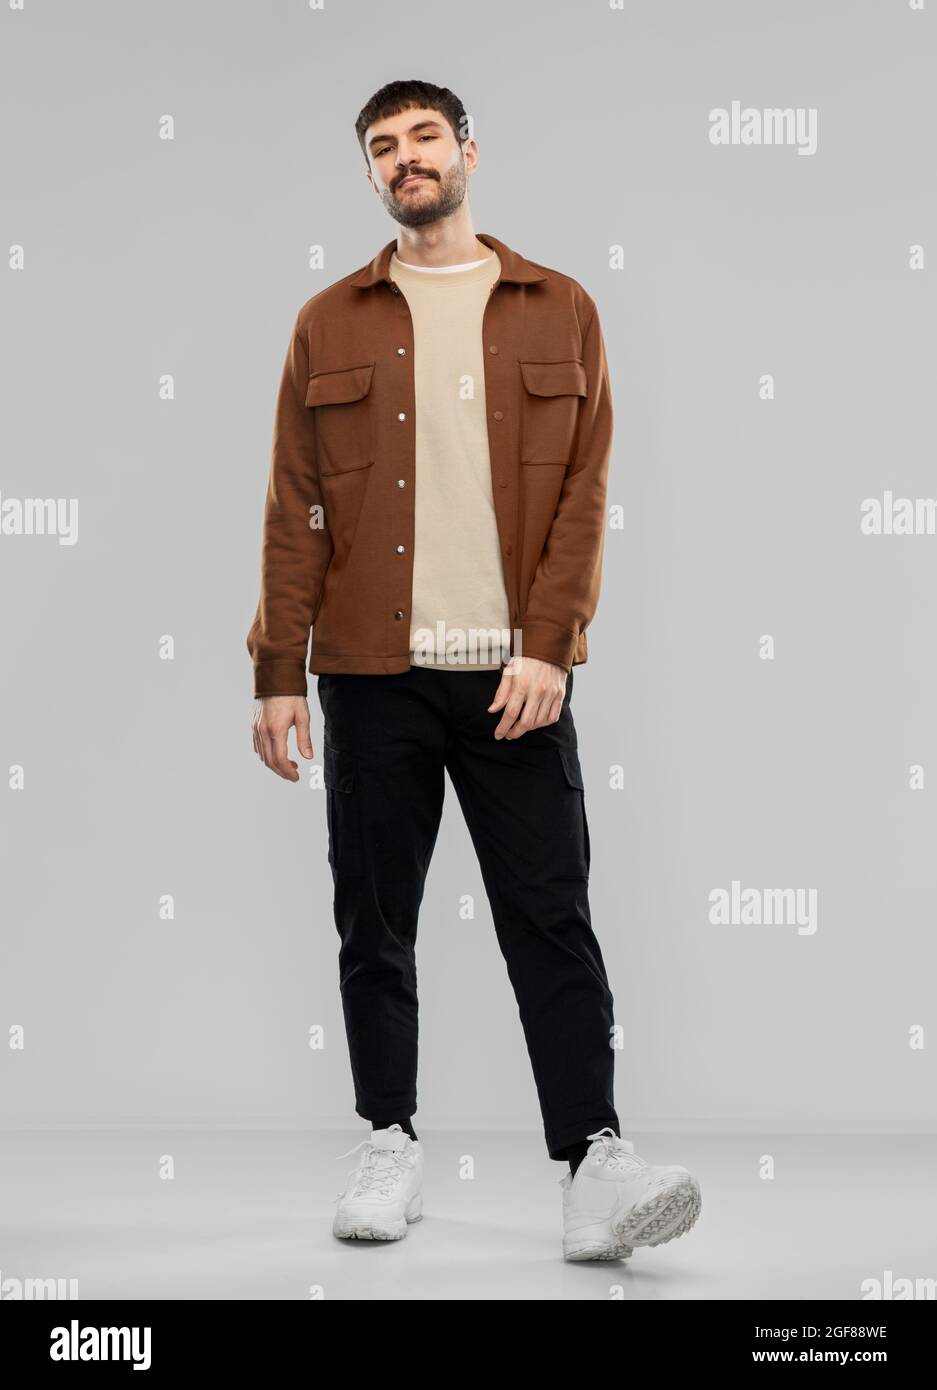 jeune homme en veste marron et pantalon noir Photo Stock - Alamy